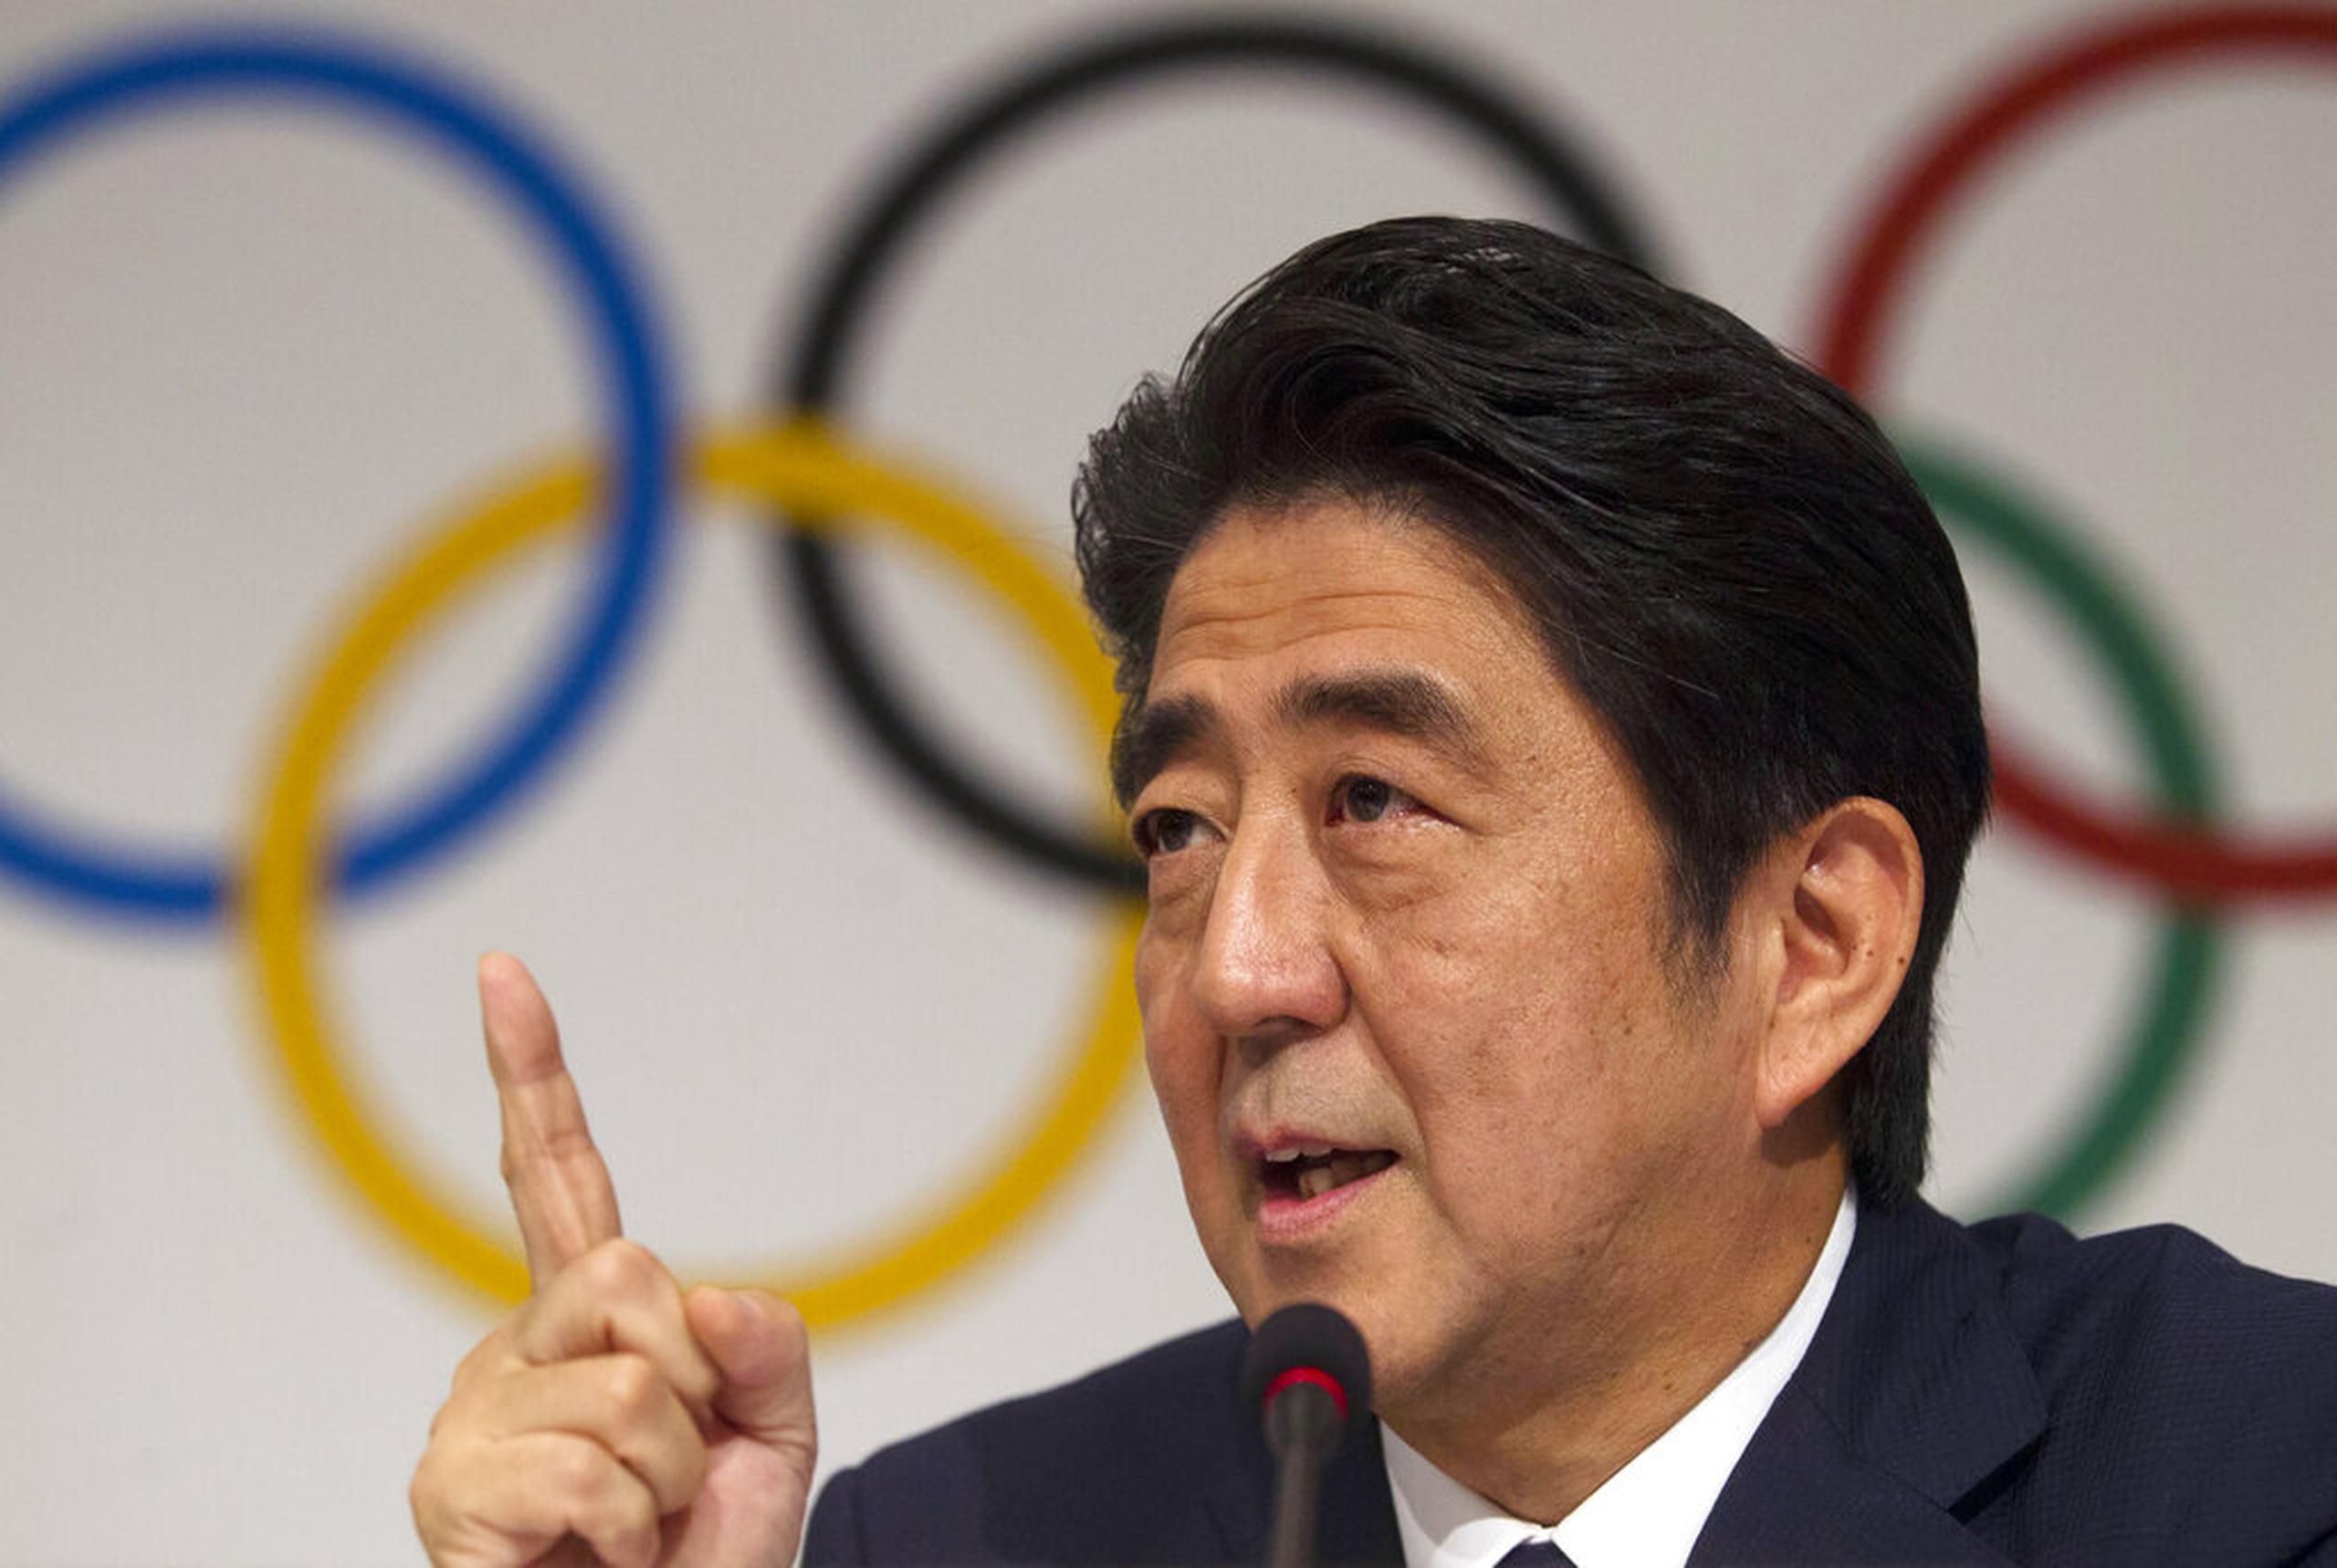 El entonces primer ministro de Japón, Shinzo Abe, habla durante una conferencia de prensa del Comité Olímpico Internacional el 7 de septiembre de 2013.